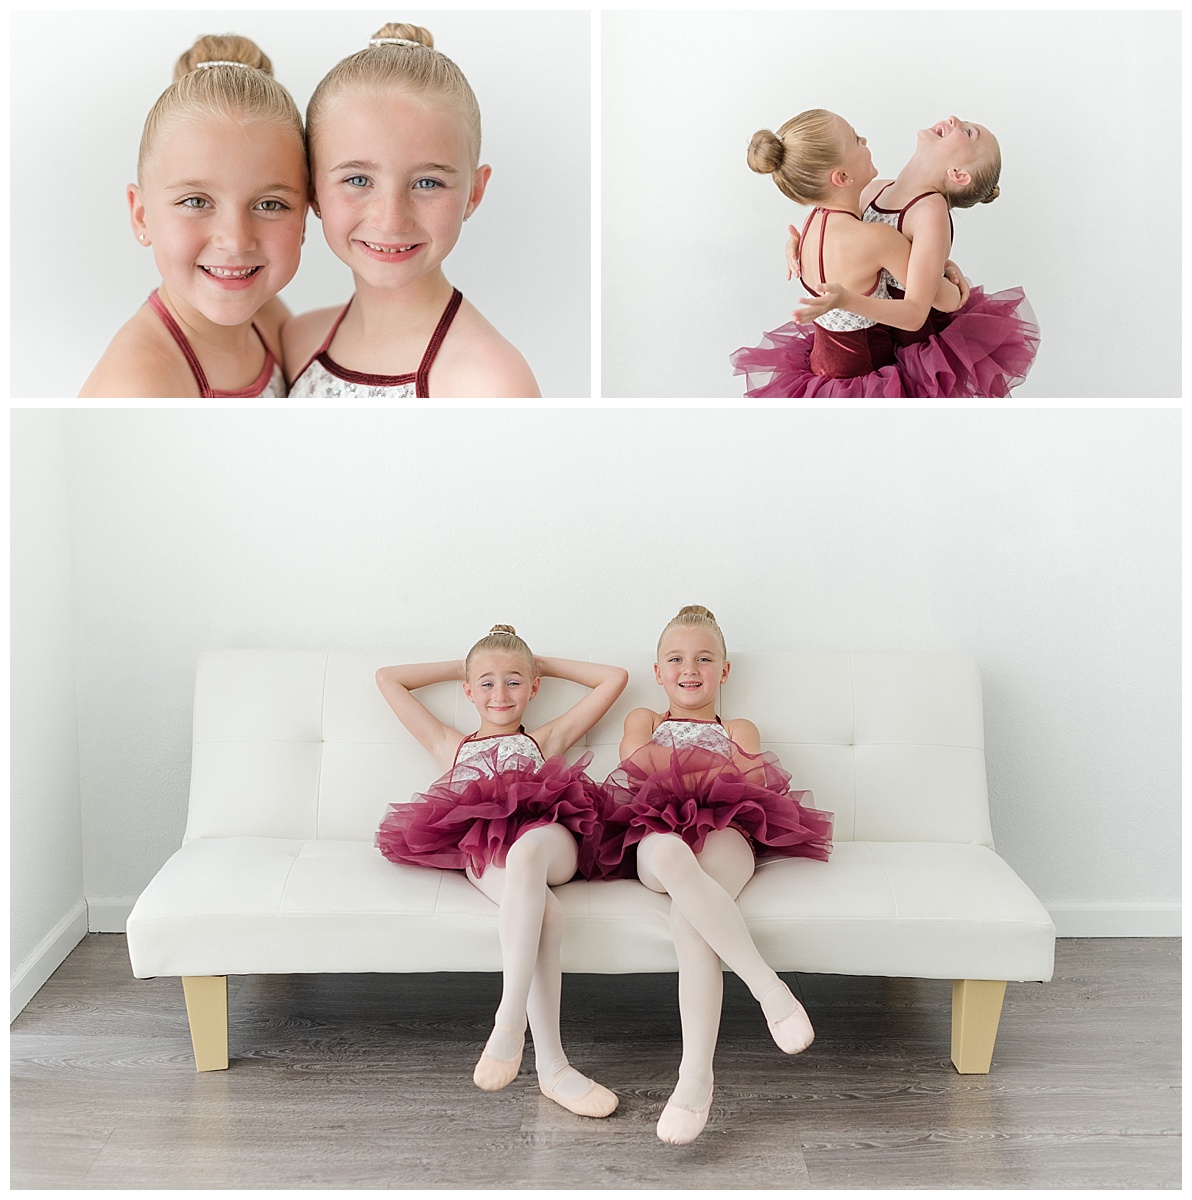 az dance project dancers recital photographs